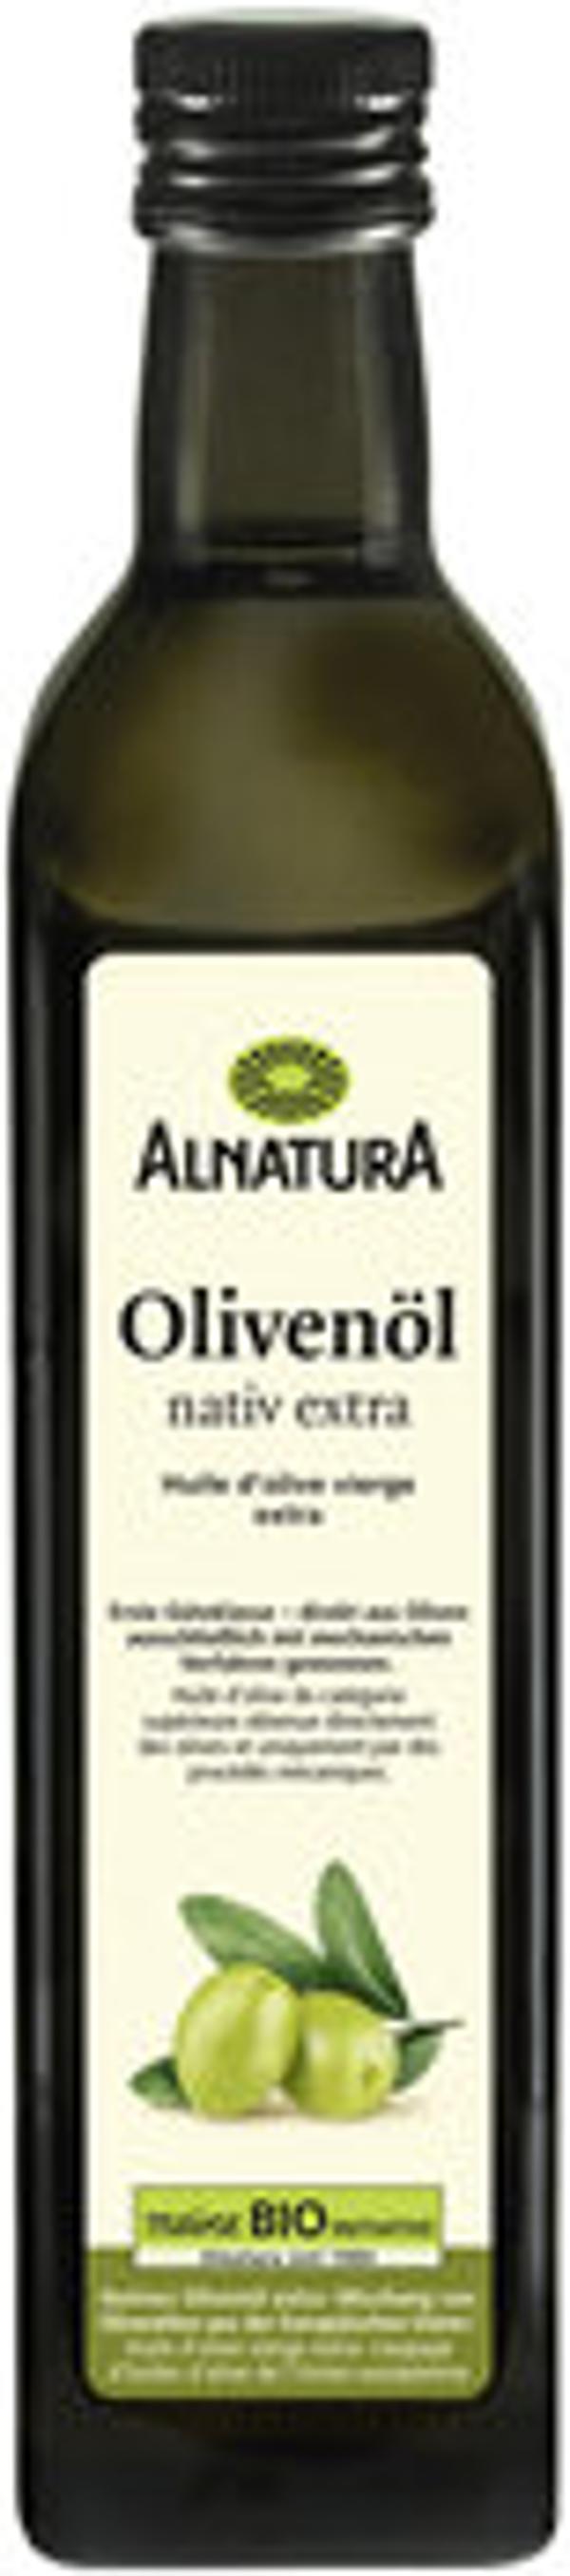 Produktfoto zu Alnatura Olivenöl 0,5L